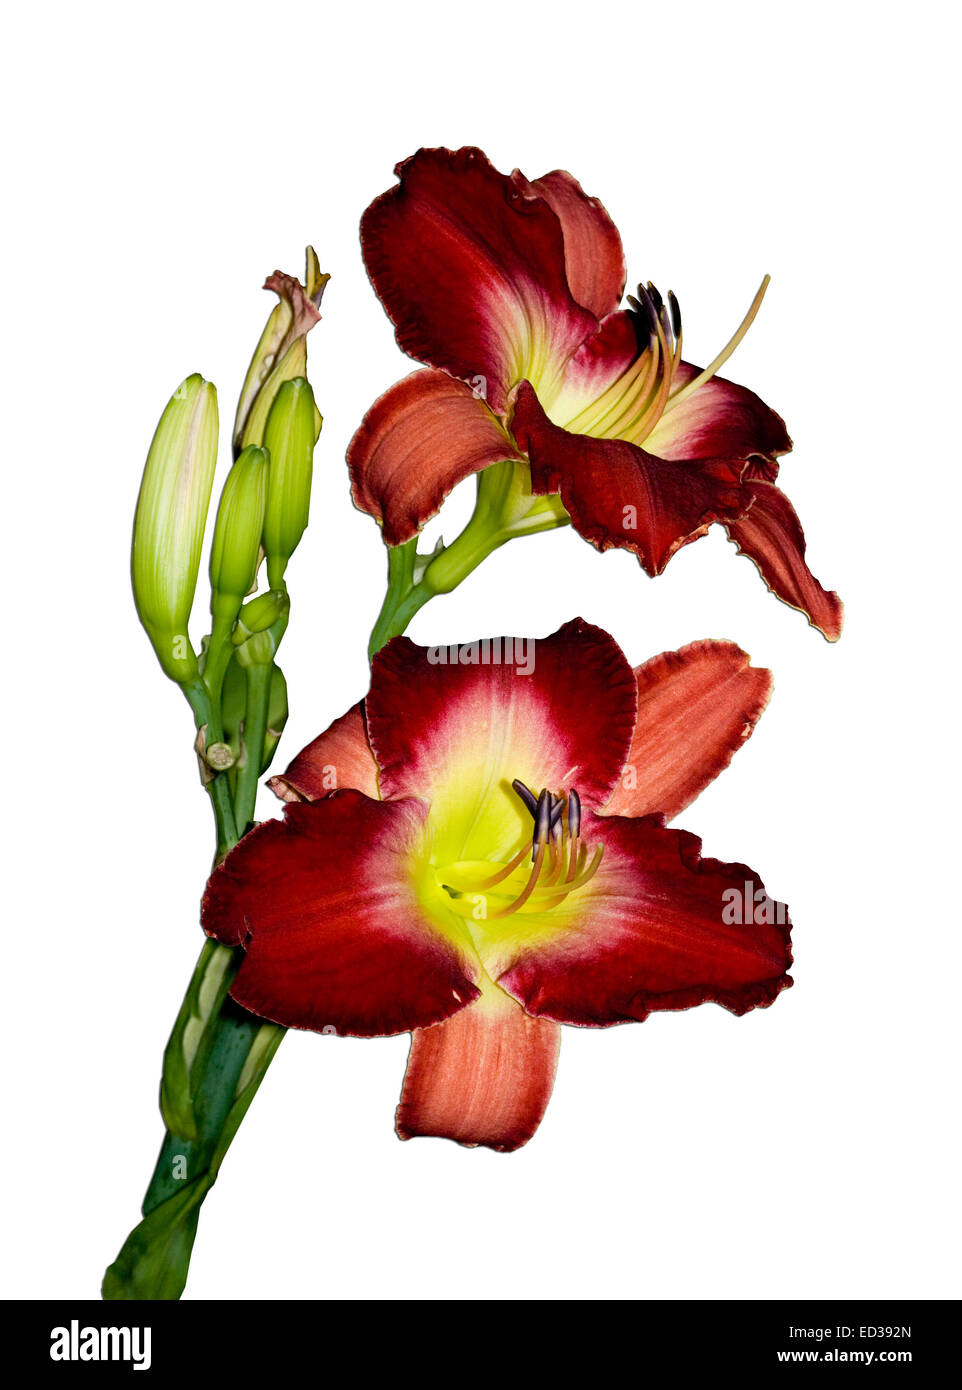 Deux grandes fleurs hémérocalle rouge foncé vif avec gorge jaune, avec des bourgeons et des tiges vert foncé à l'arrière-plan uni, blanc Banque D'Images